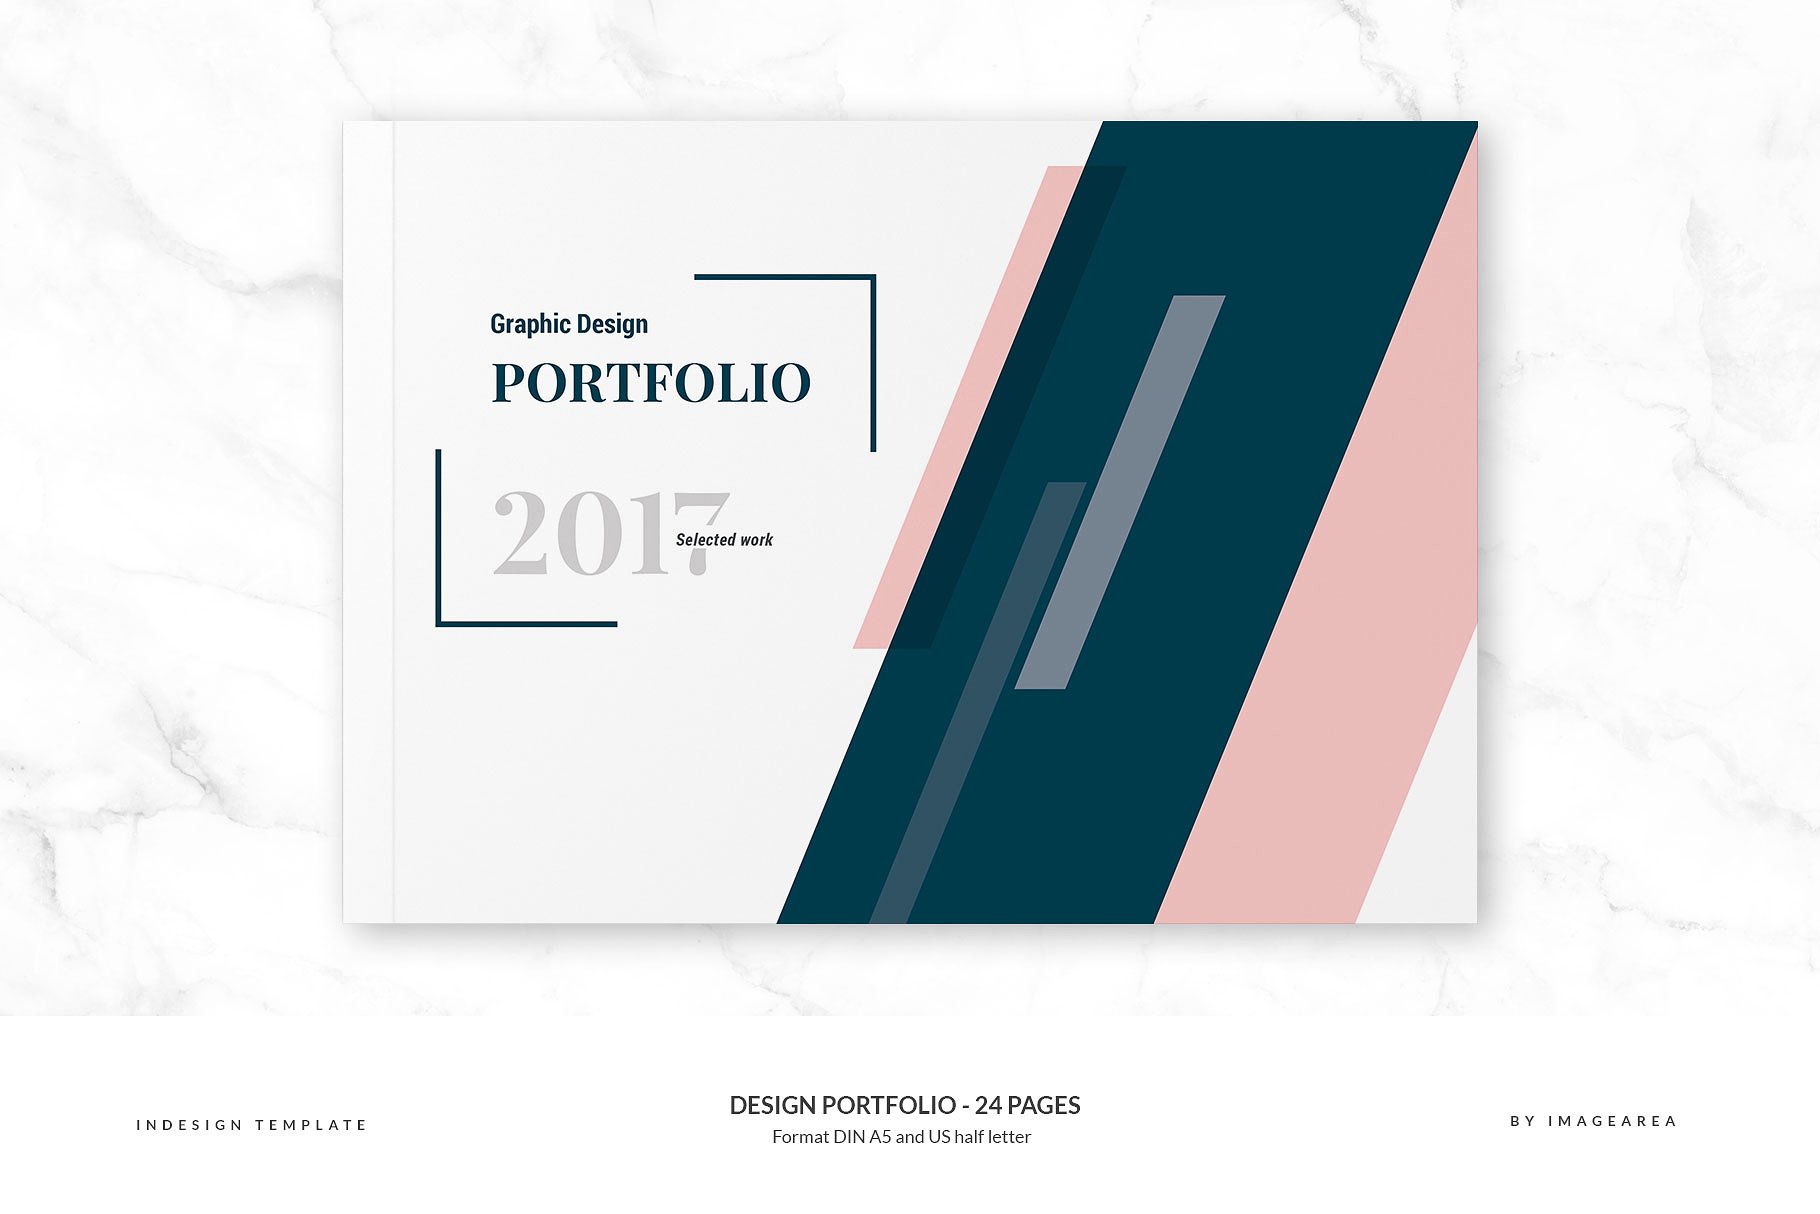 时尚简约企业画册模板 Design Portfolio – 24 Pages插图